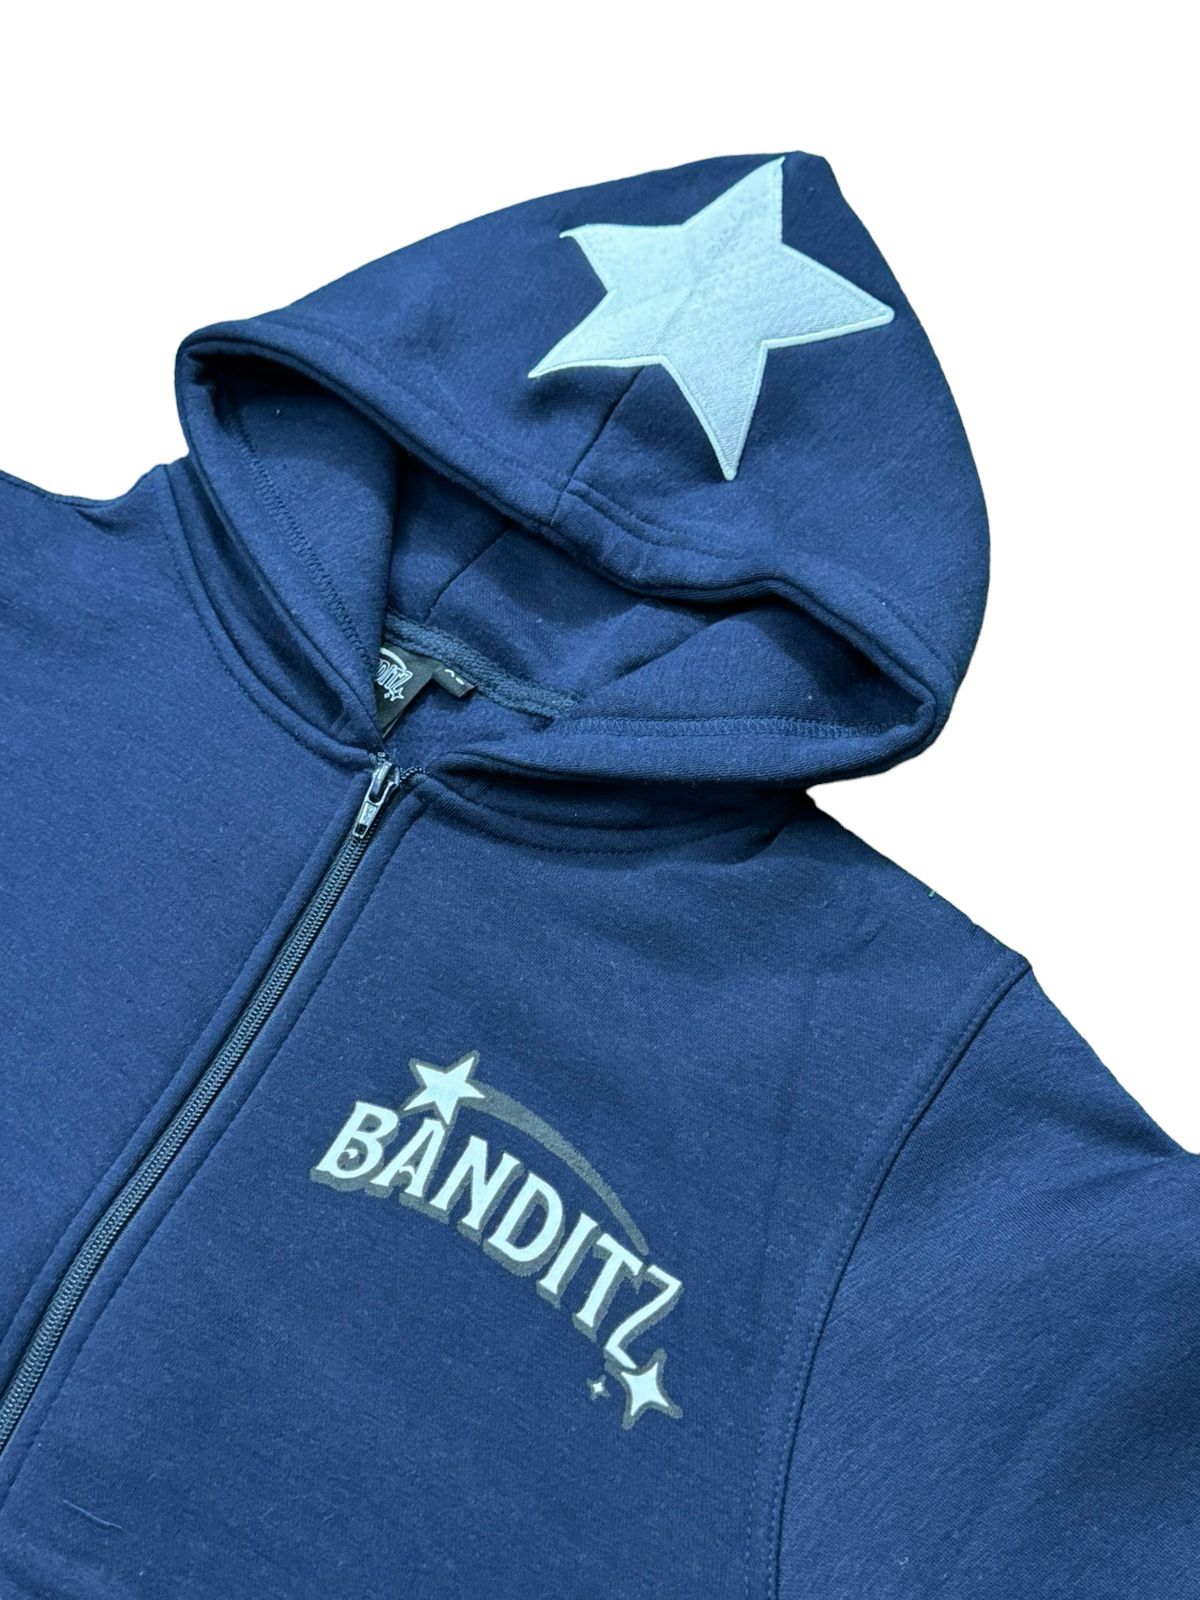 Banditz- ZipUp NavyBlue & White Female